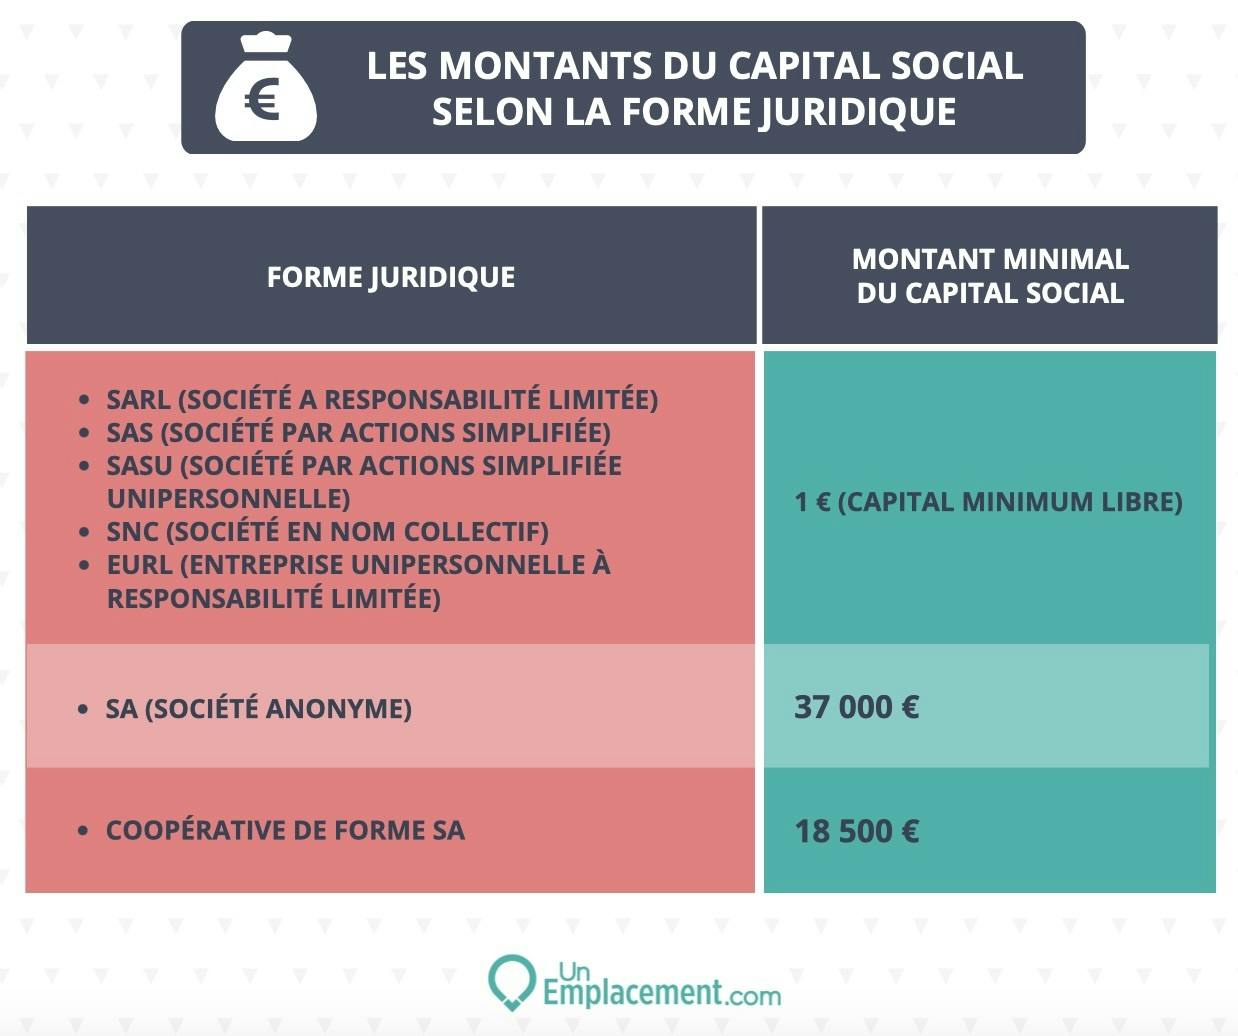 Les montants du capital social selon forme juridique 